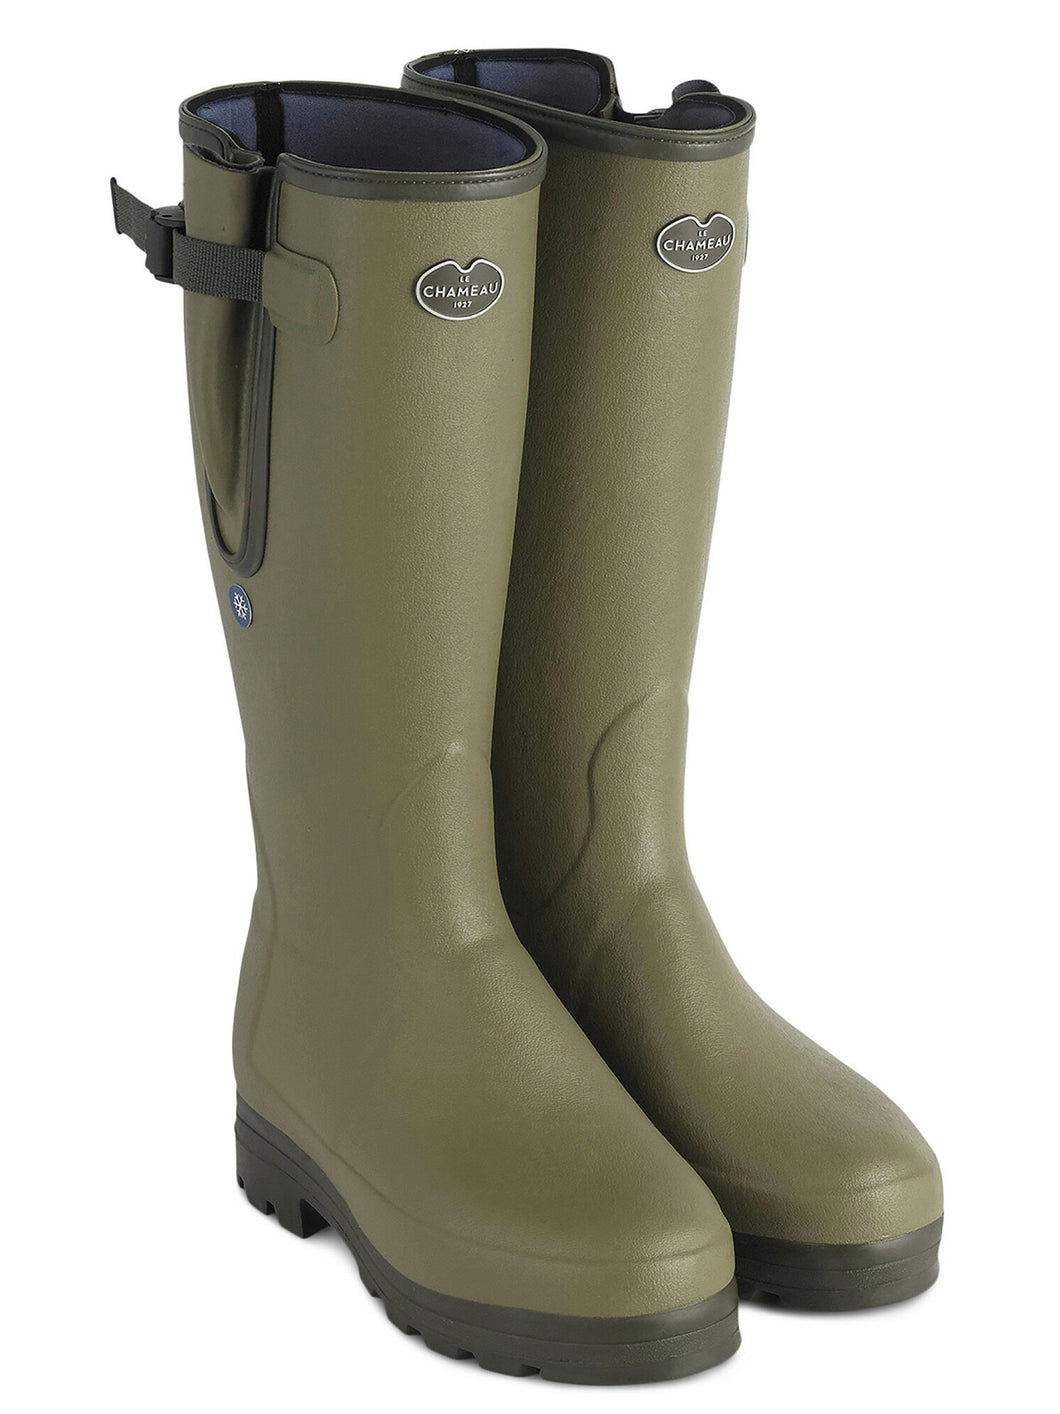 LE CHAMEAU Vierzonord Plus Cold Weather Boots - Mens Neoprene Lined - Vert Vierzon